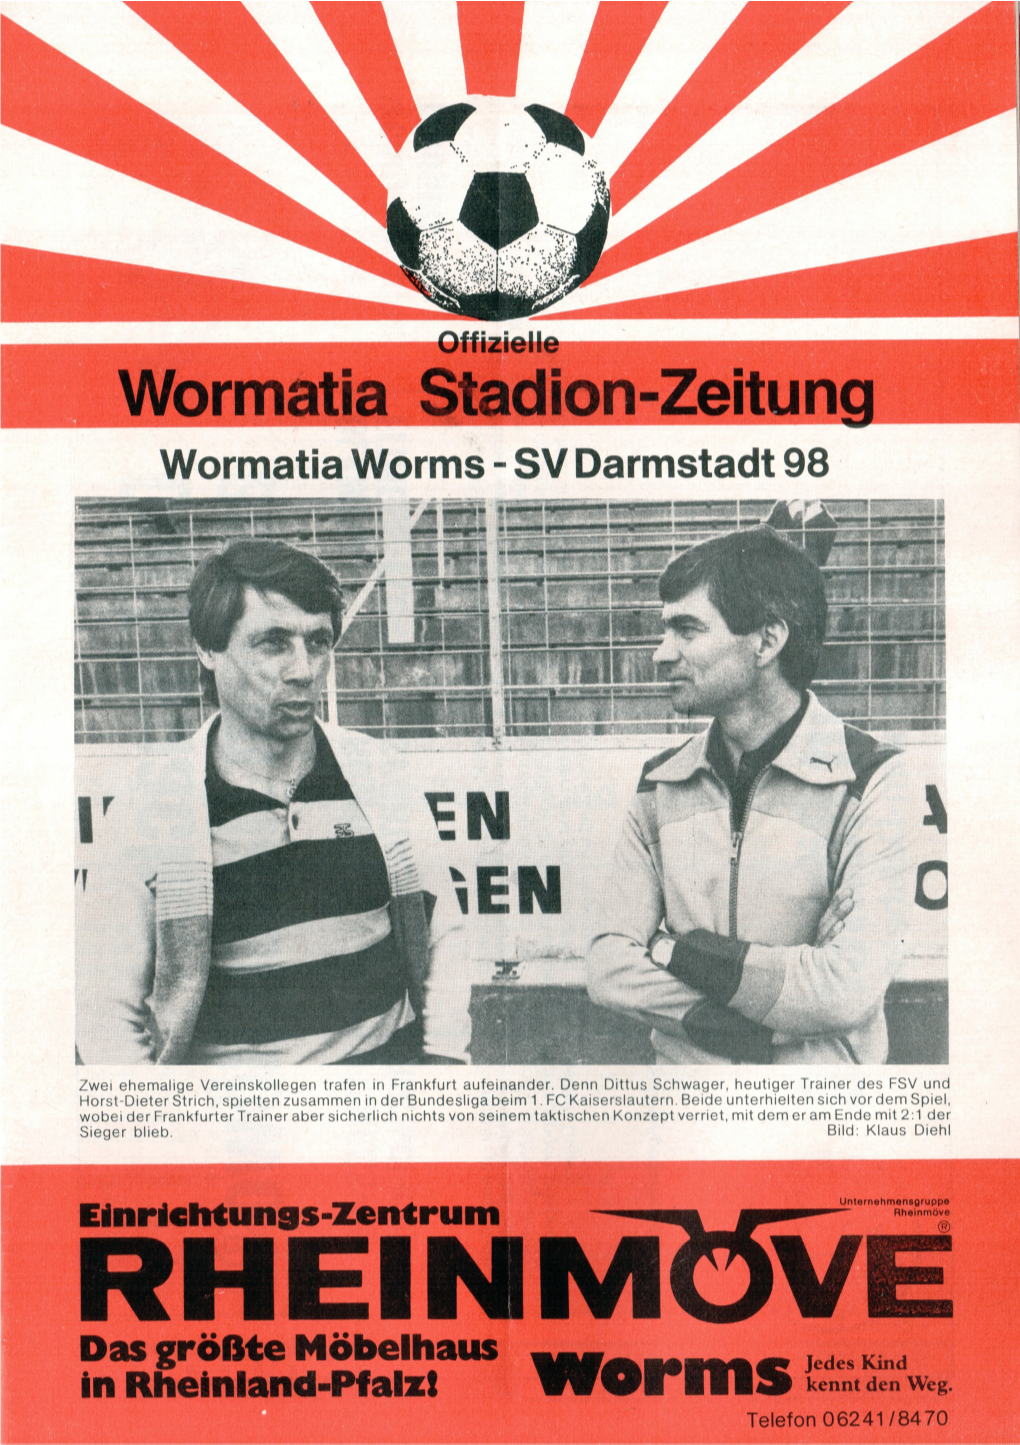 Wormatia Stadion-Zeitung Wormatia Stadion-Zeitung Wormatia SV Darmstadt Wormatia SV Waldhof Worms- 4: 98M Worms- Mannheim